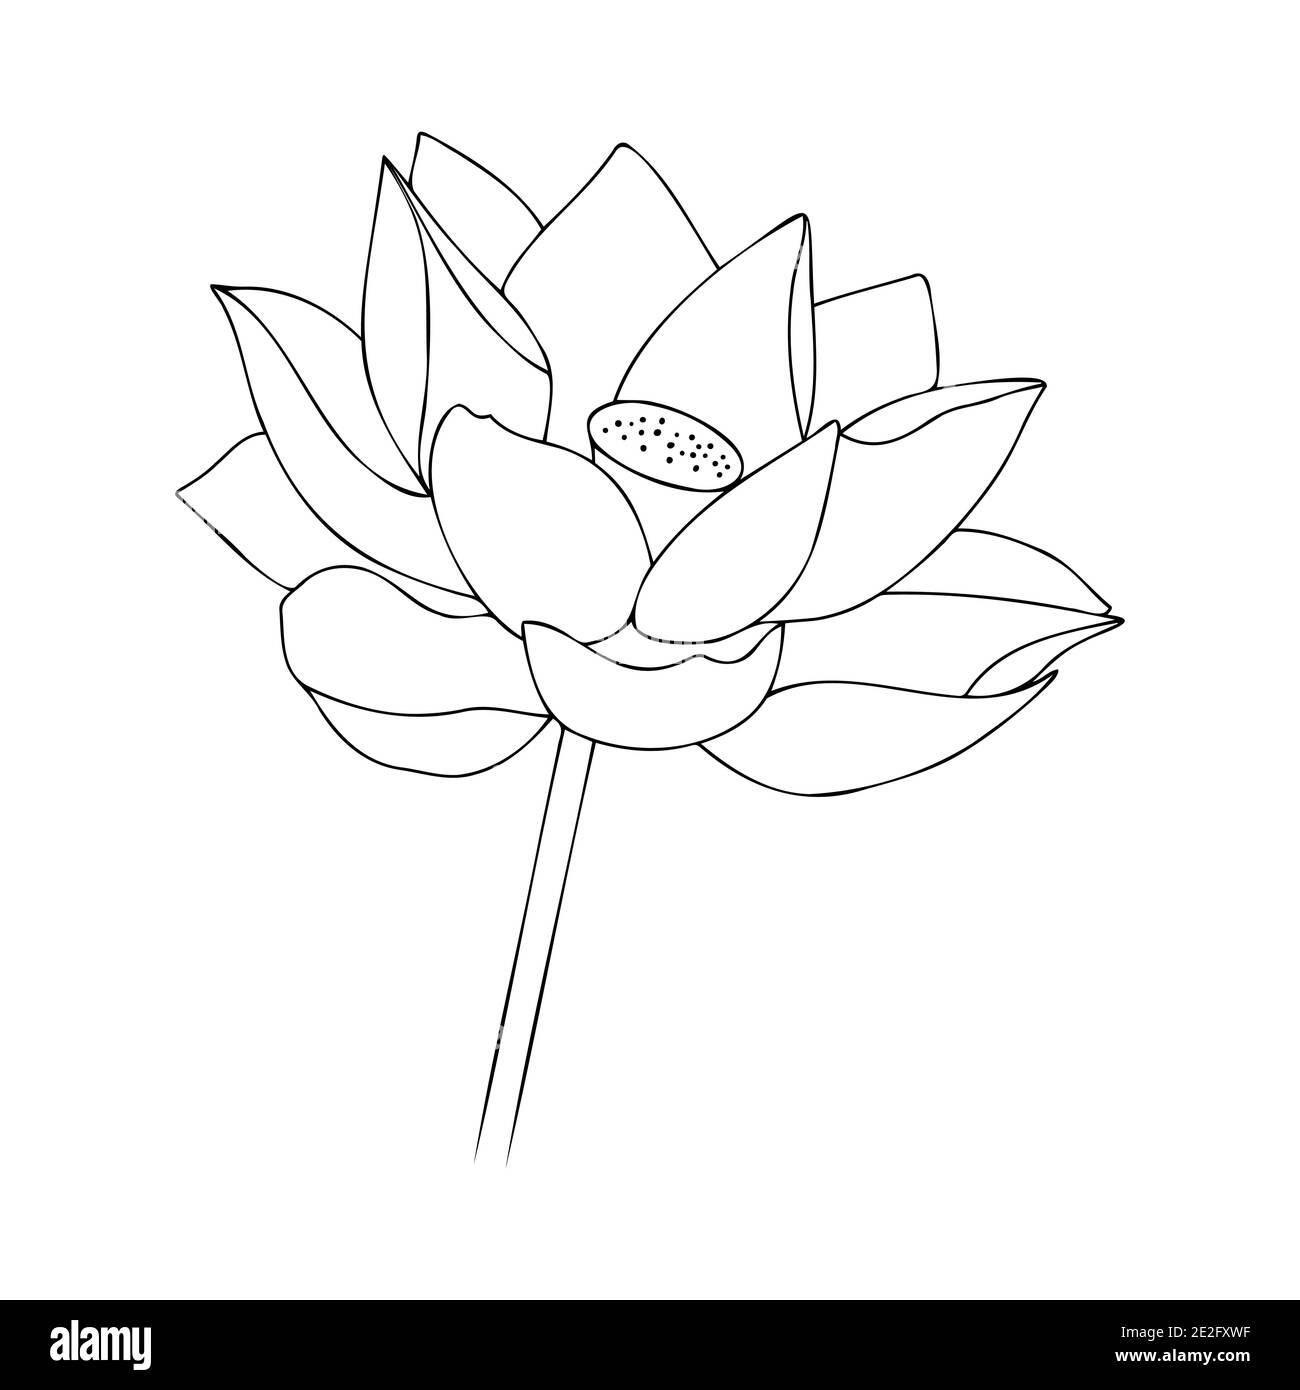 Seerose asiatische Blume. Blumenblume Illustration. Vektor-Blumendarstellung. Schwarze Silhouette von Lotusblumen Symbol auf einem weißen Hintergrund. Vektorgrafik Stock Vektor